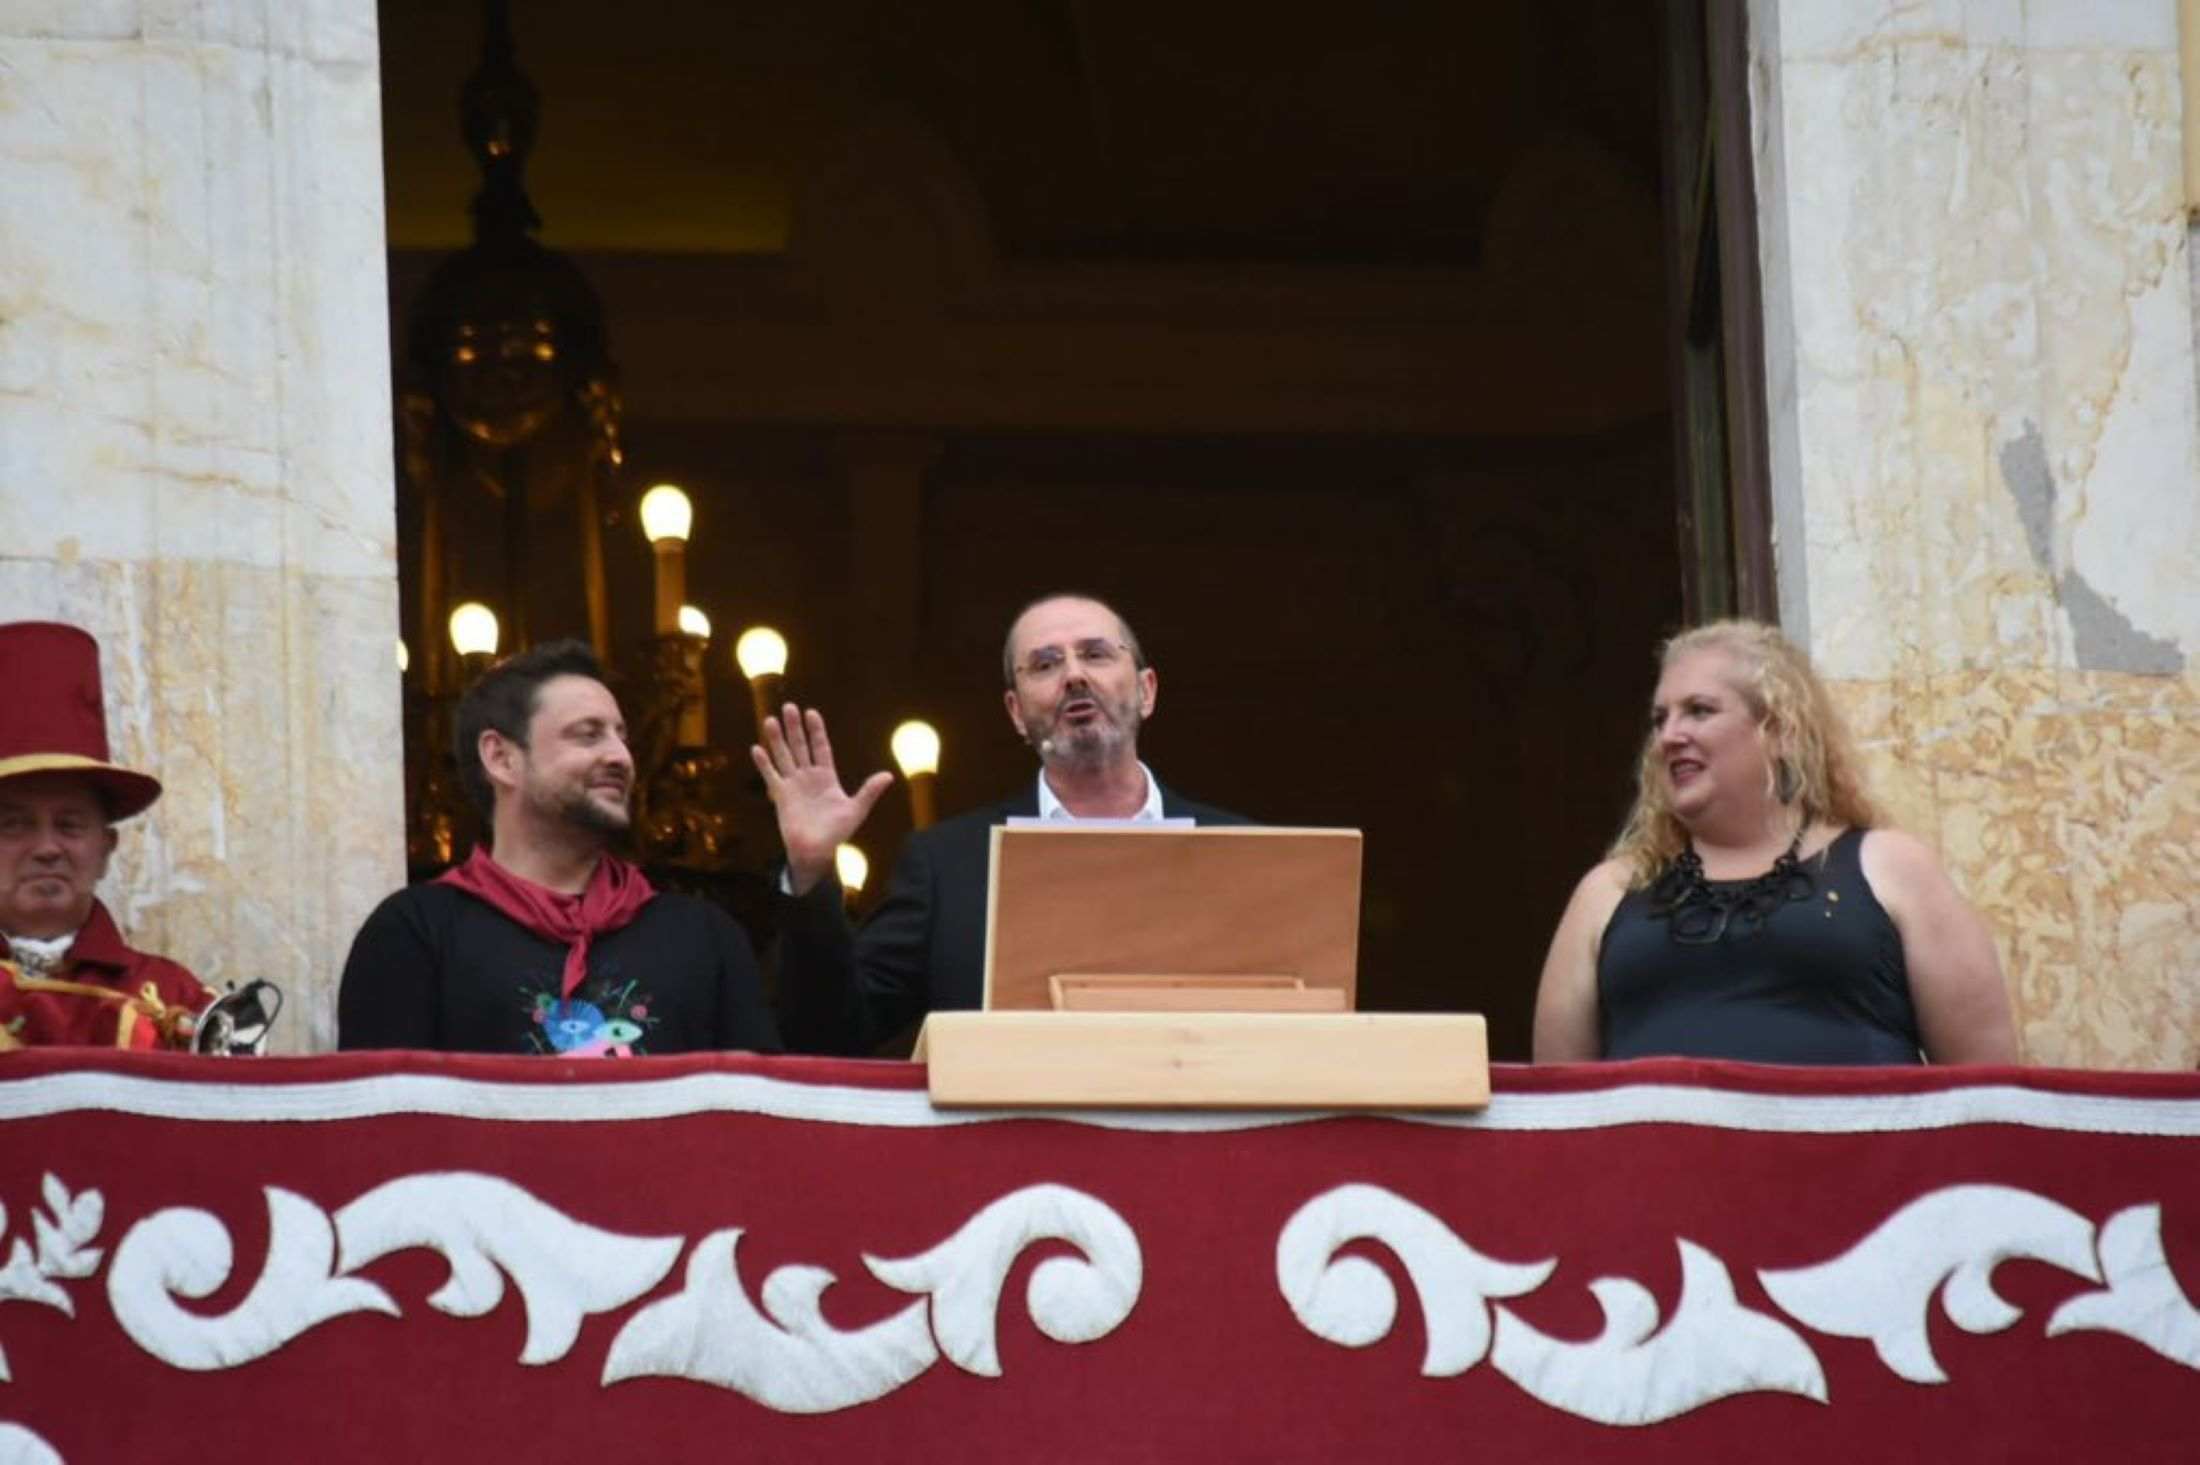 La extrema derecha de Tarragona, en choque por el pregón de Santa Tecla y la reacción del alcalde